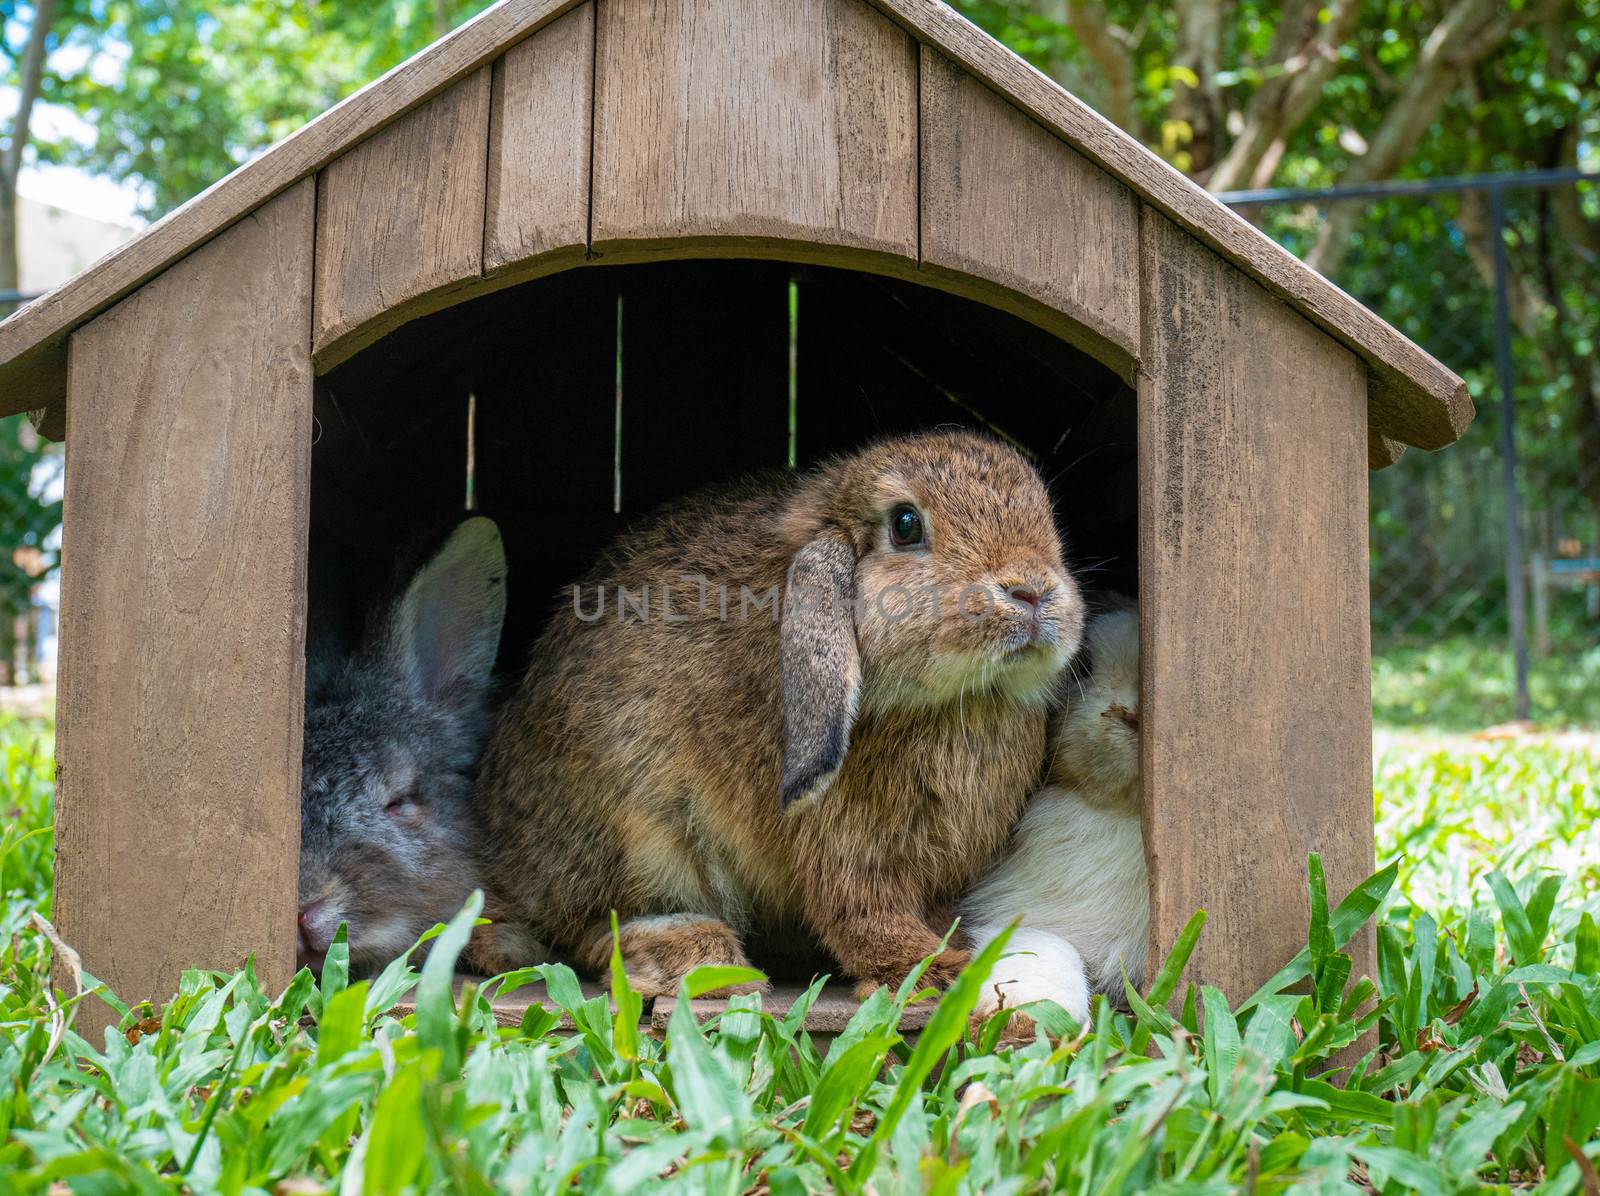 Cute little rabbits sitting in wooden hutch in the garden. Easte by TEERASAK